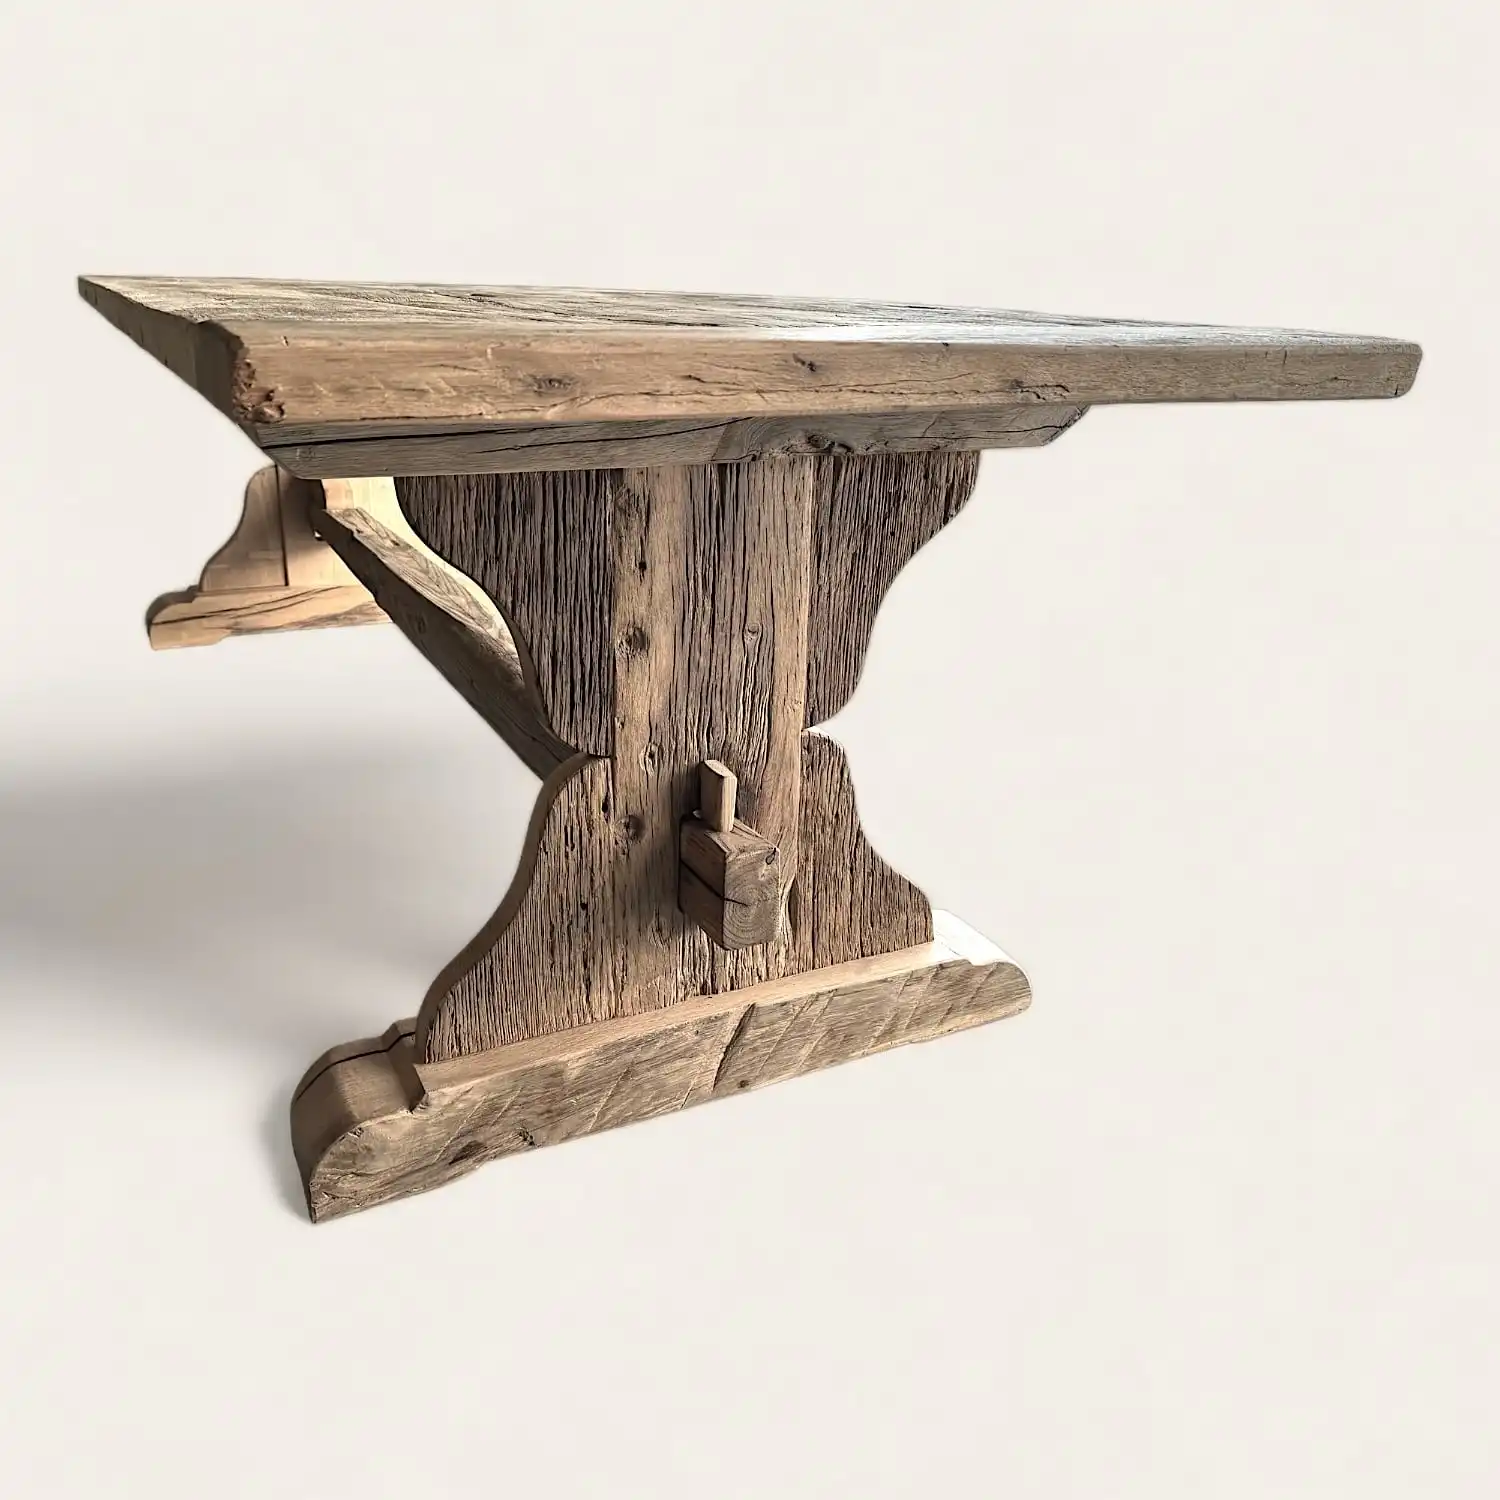  Une table rustique en bois avec un socle en bois. 